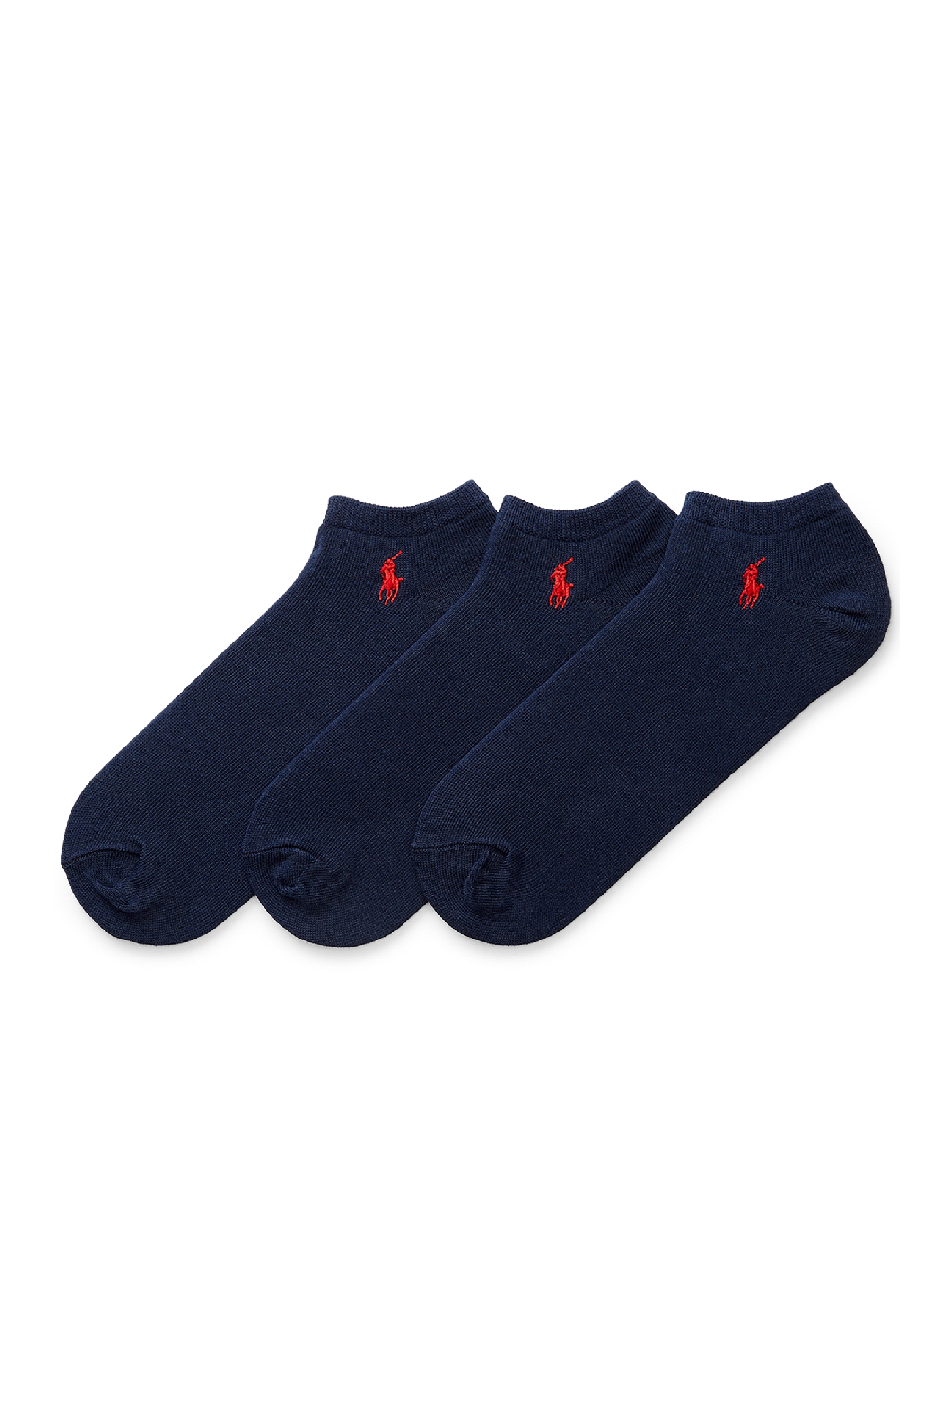 Polo Ralph Lauren 3 Pack Men's Ankle Sock